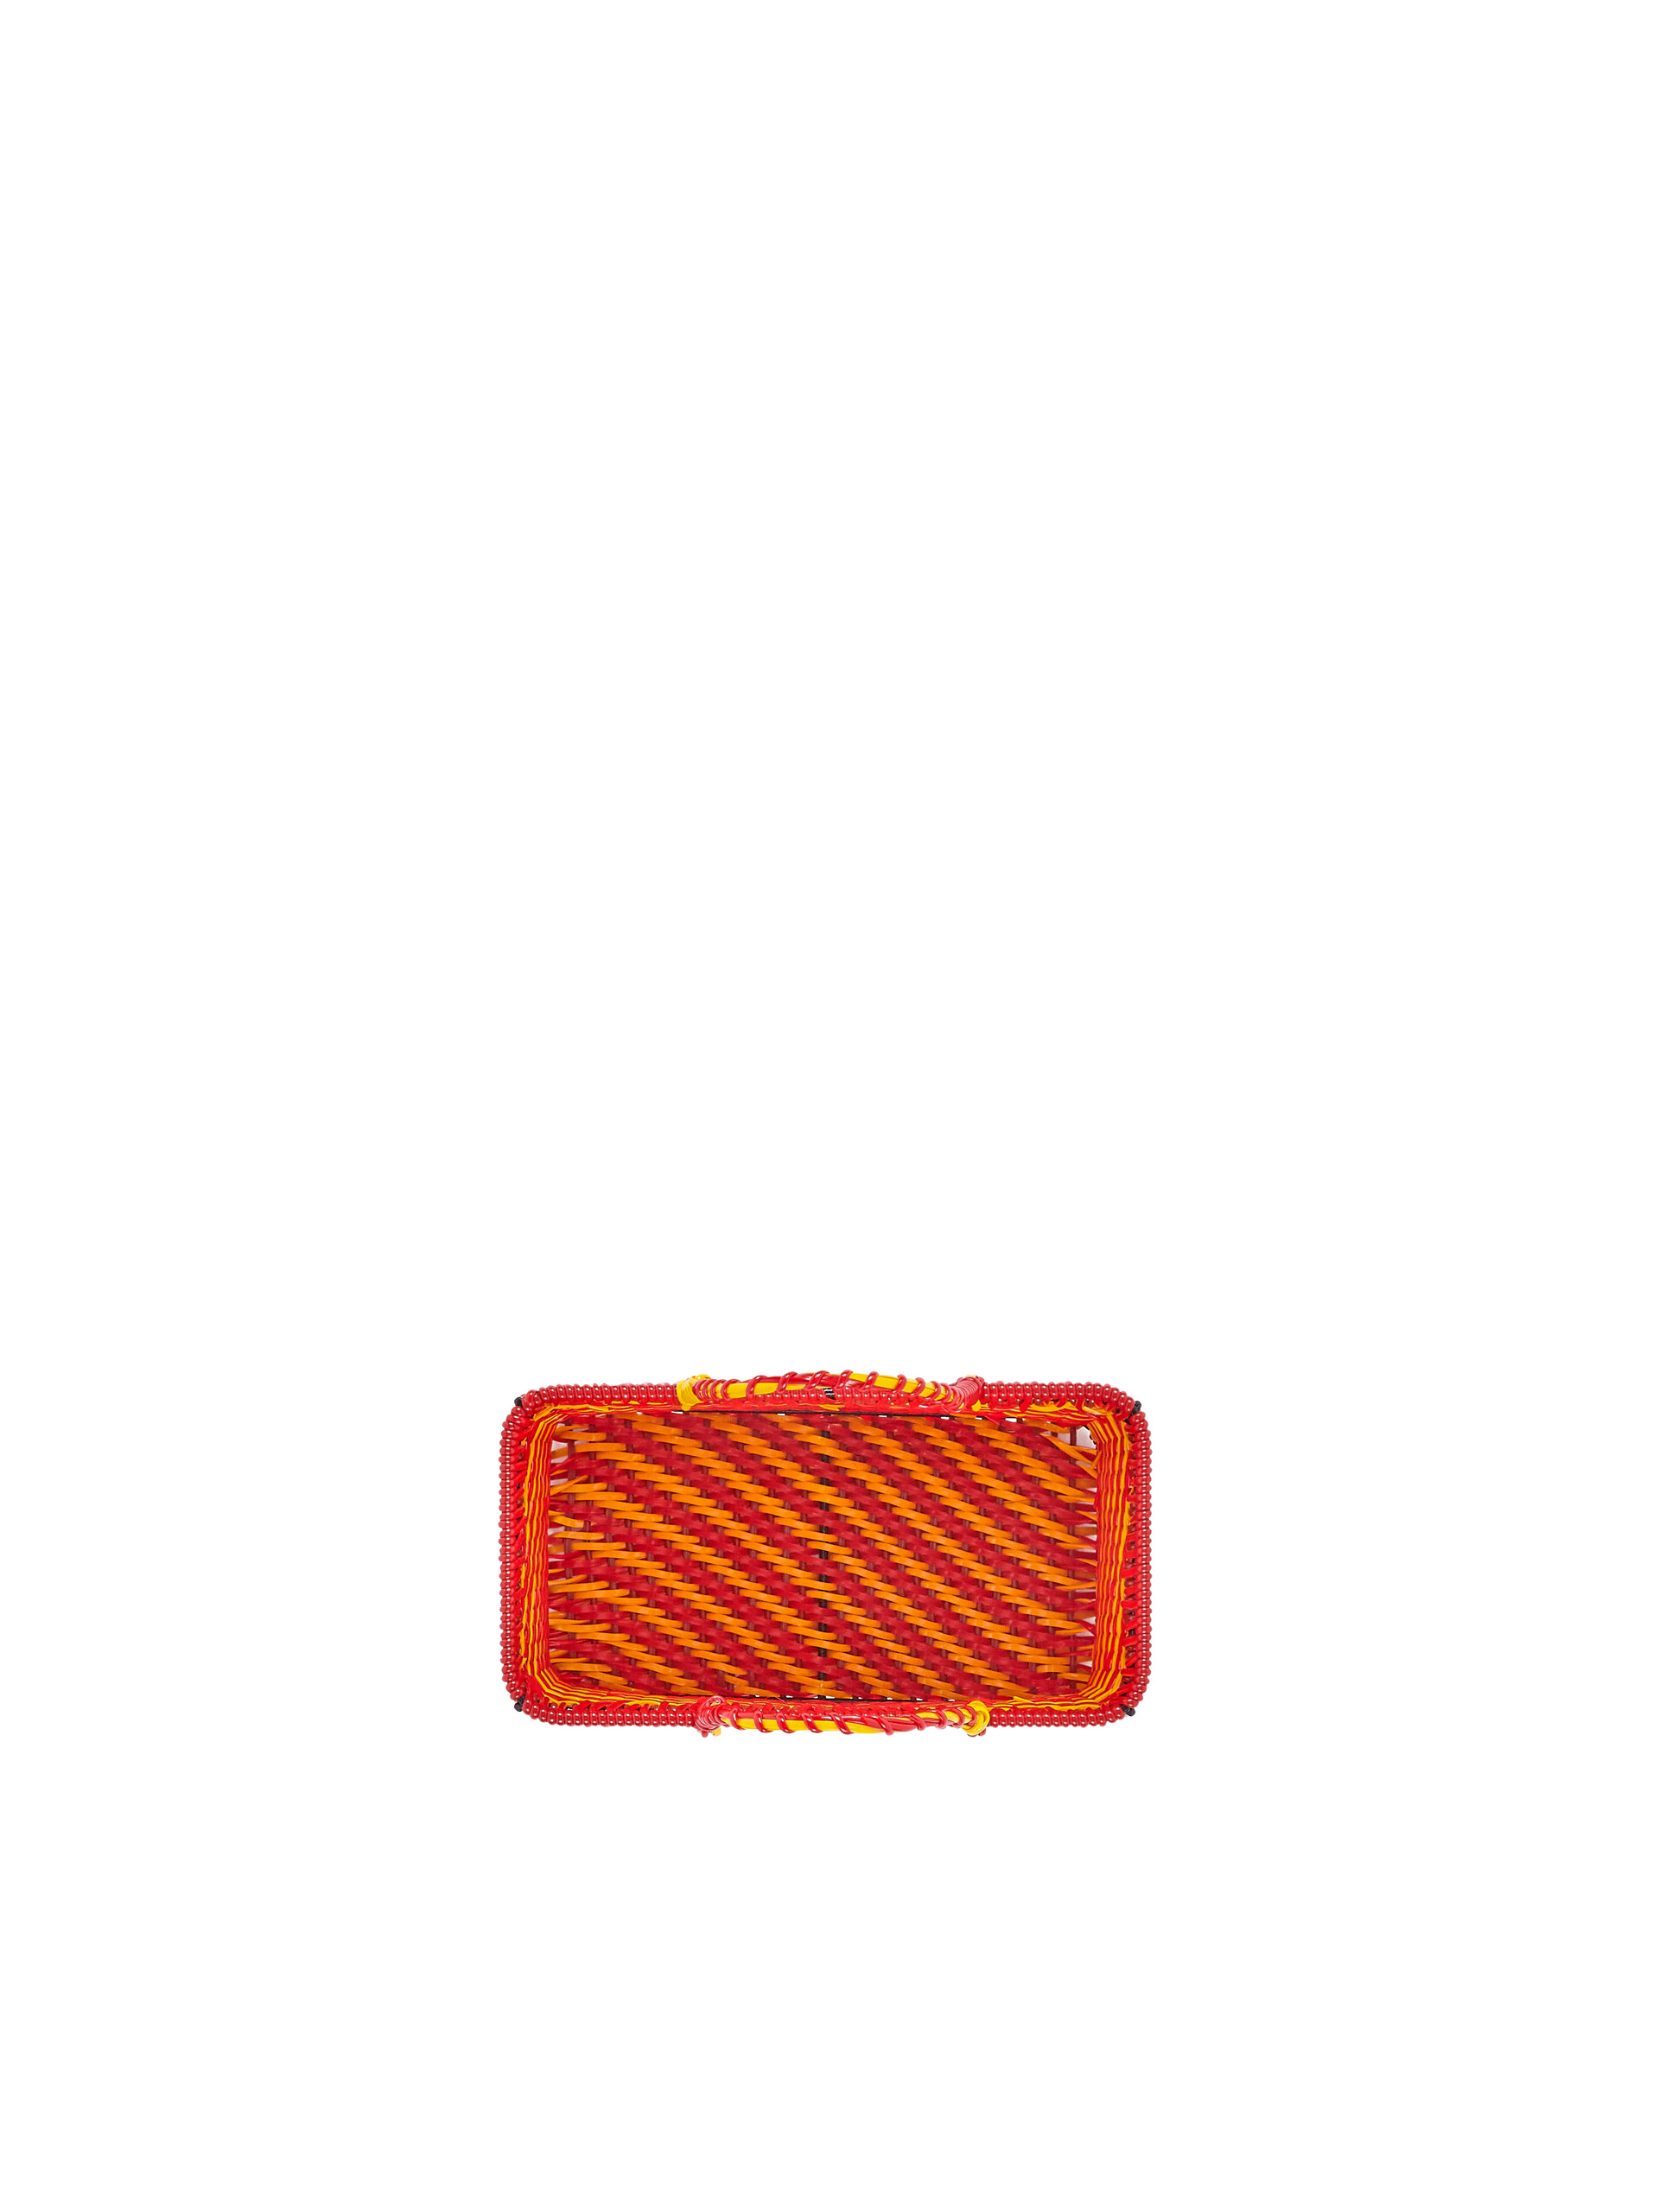 Cesto MARNI MARKET in ferro e PVC  arancio e rosso - Home Accessories - Image 4